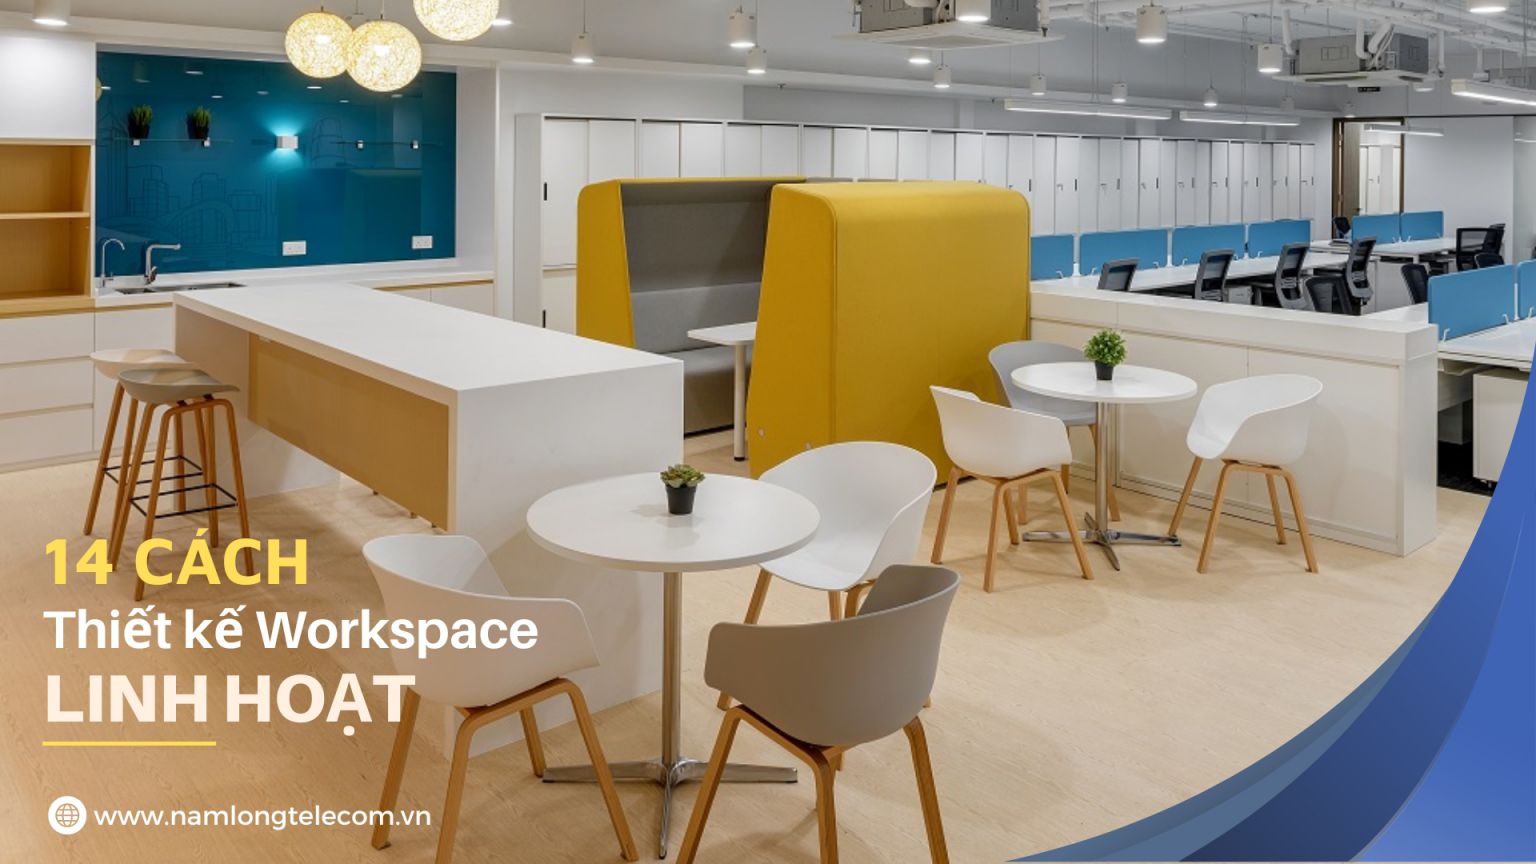 14 cách sáng tạo thiết kế workspace linh hoạt cho văn phòng làm việc của bạn